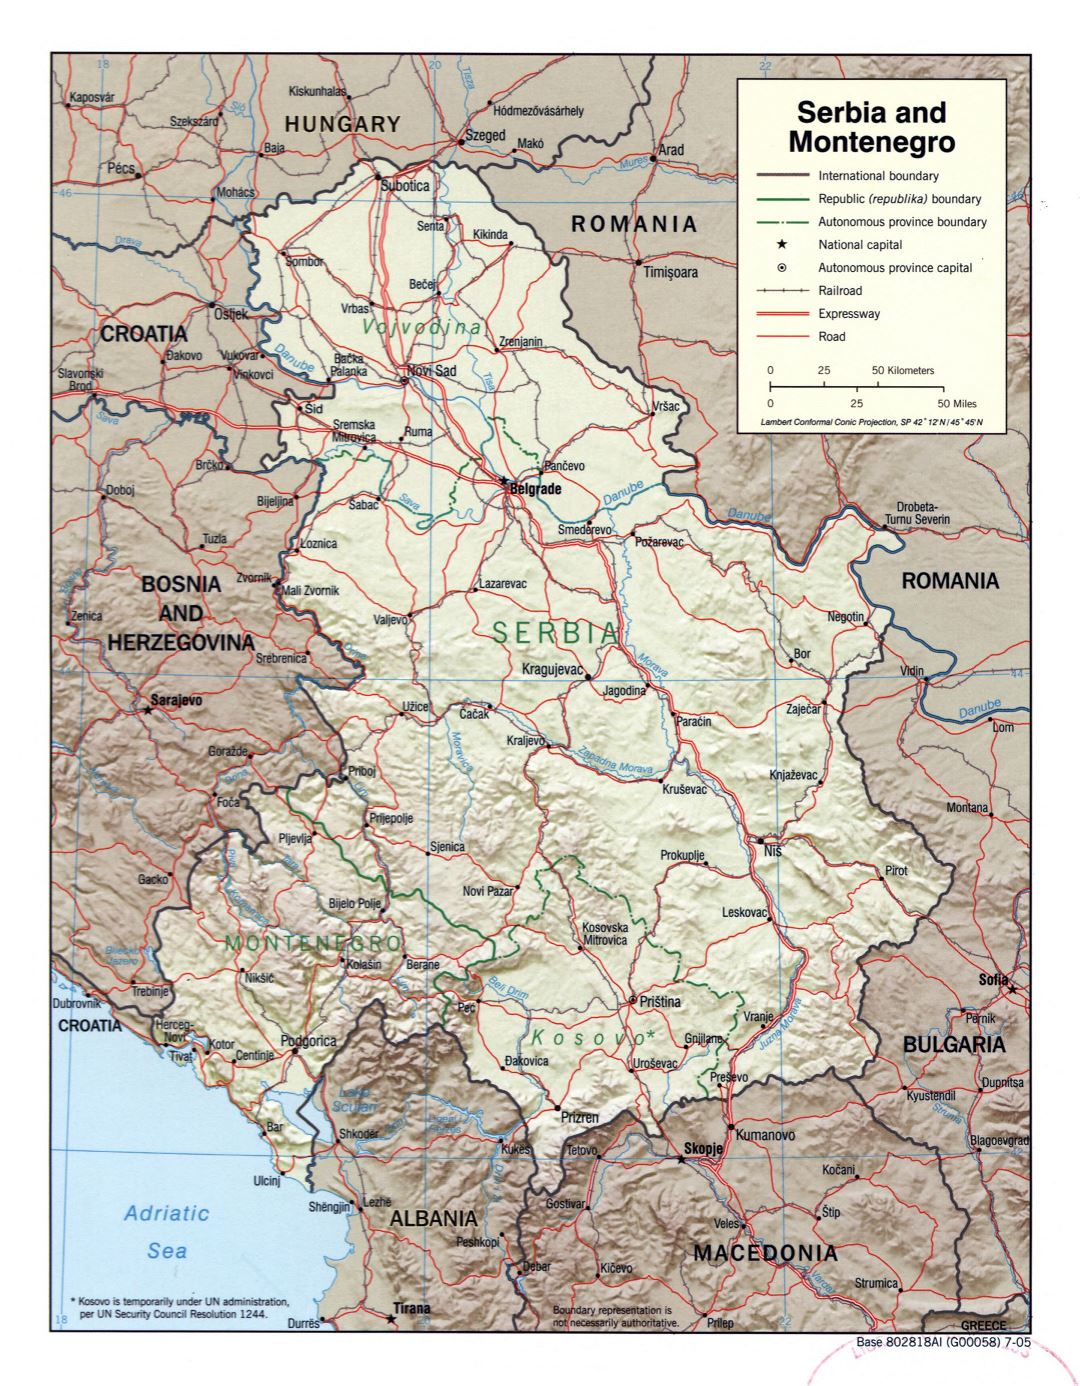 A gran escala mapa político de Serbia y Montenegro con relieves, carreteras, ferrocarriles y ciudades principales - 2005